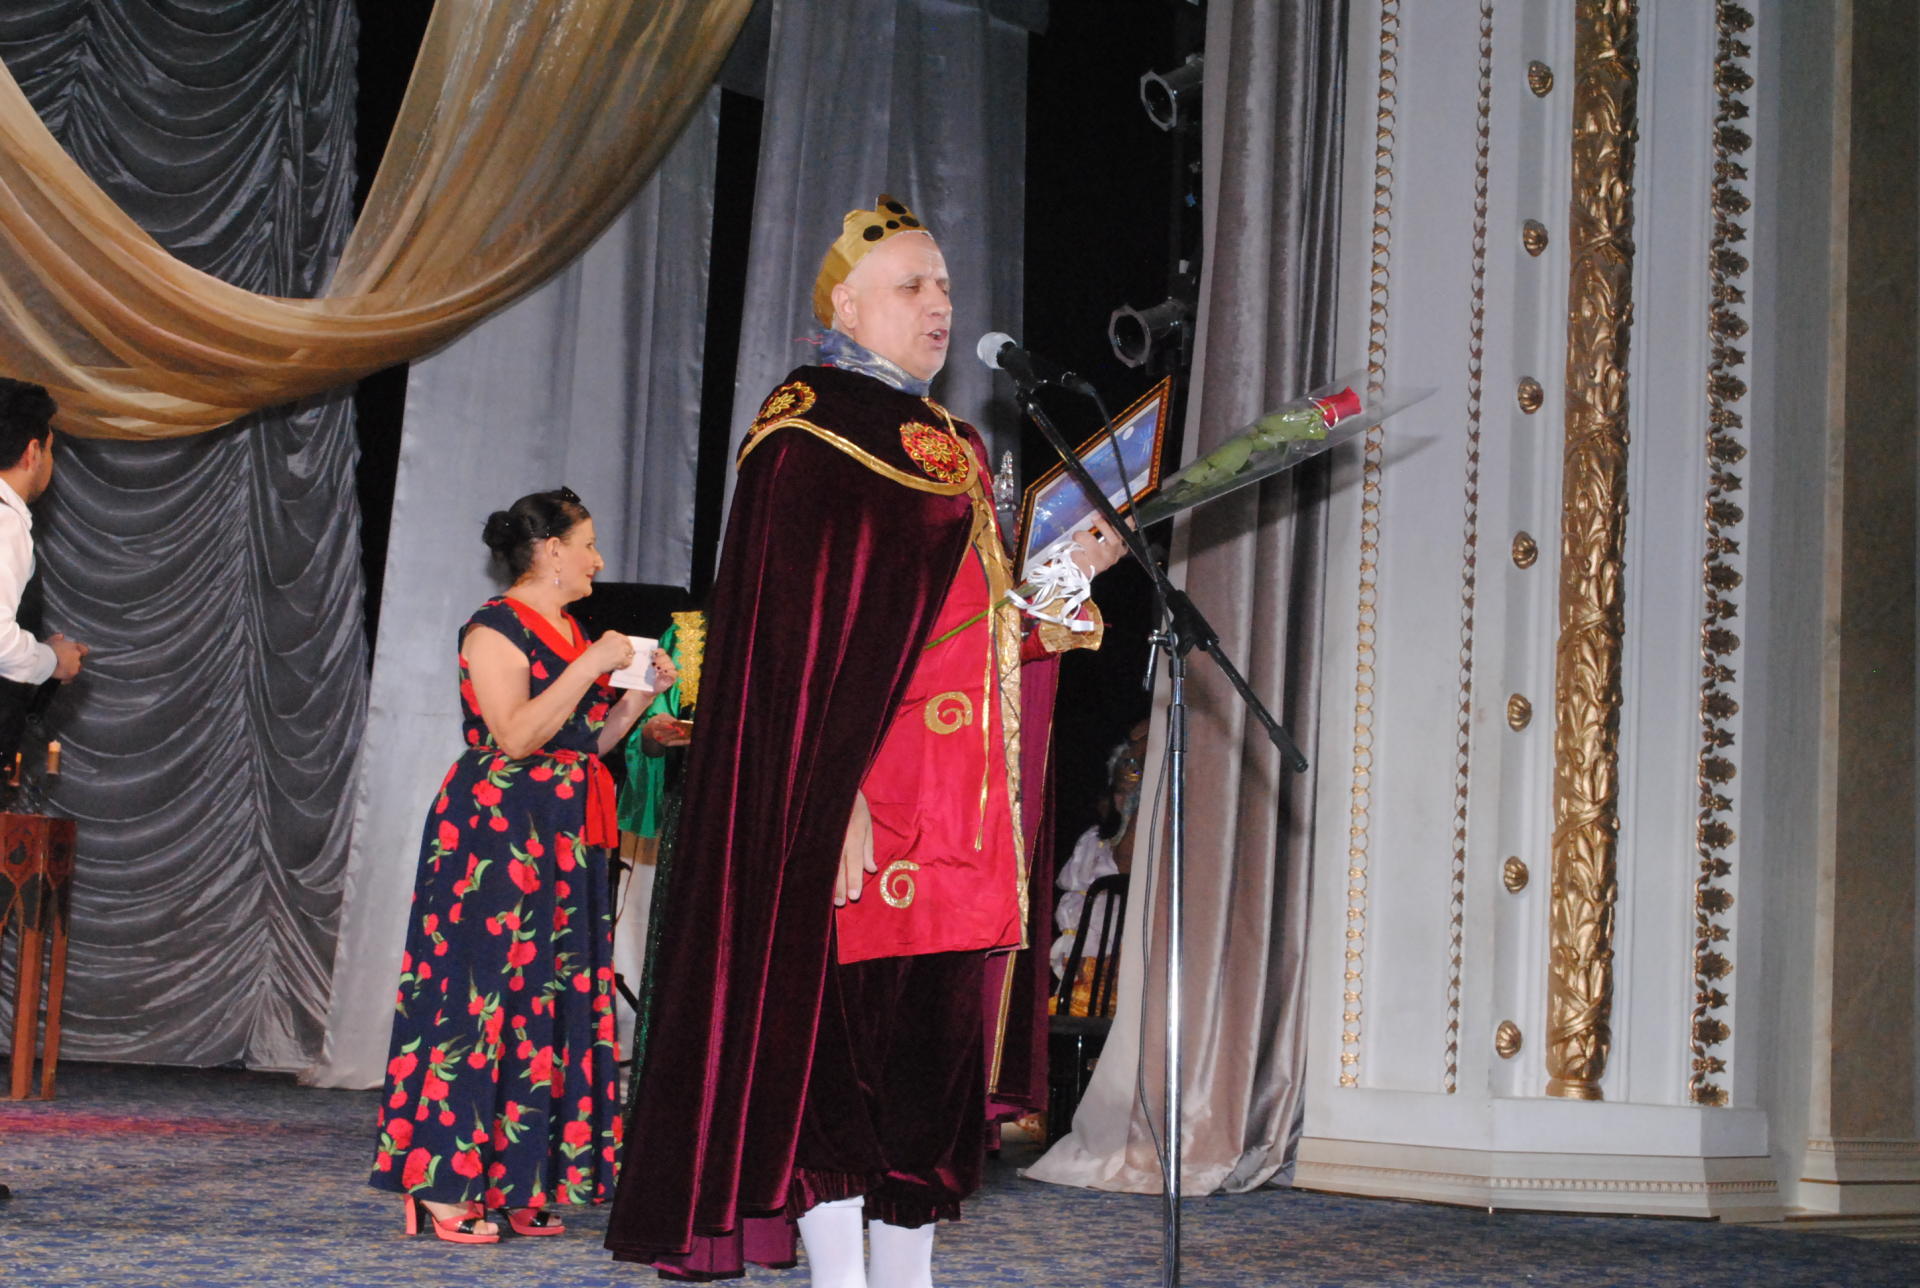 Sumqayıt Dövlət Dram Teatrında mükafatlandırma mərasimi keçirilib (FOTO) - Gallery Image